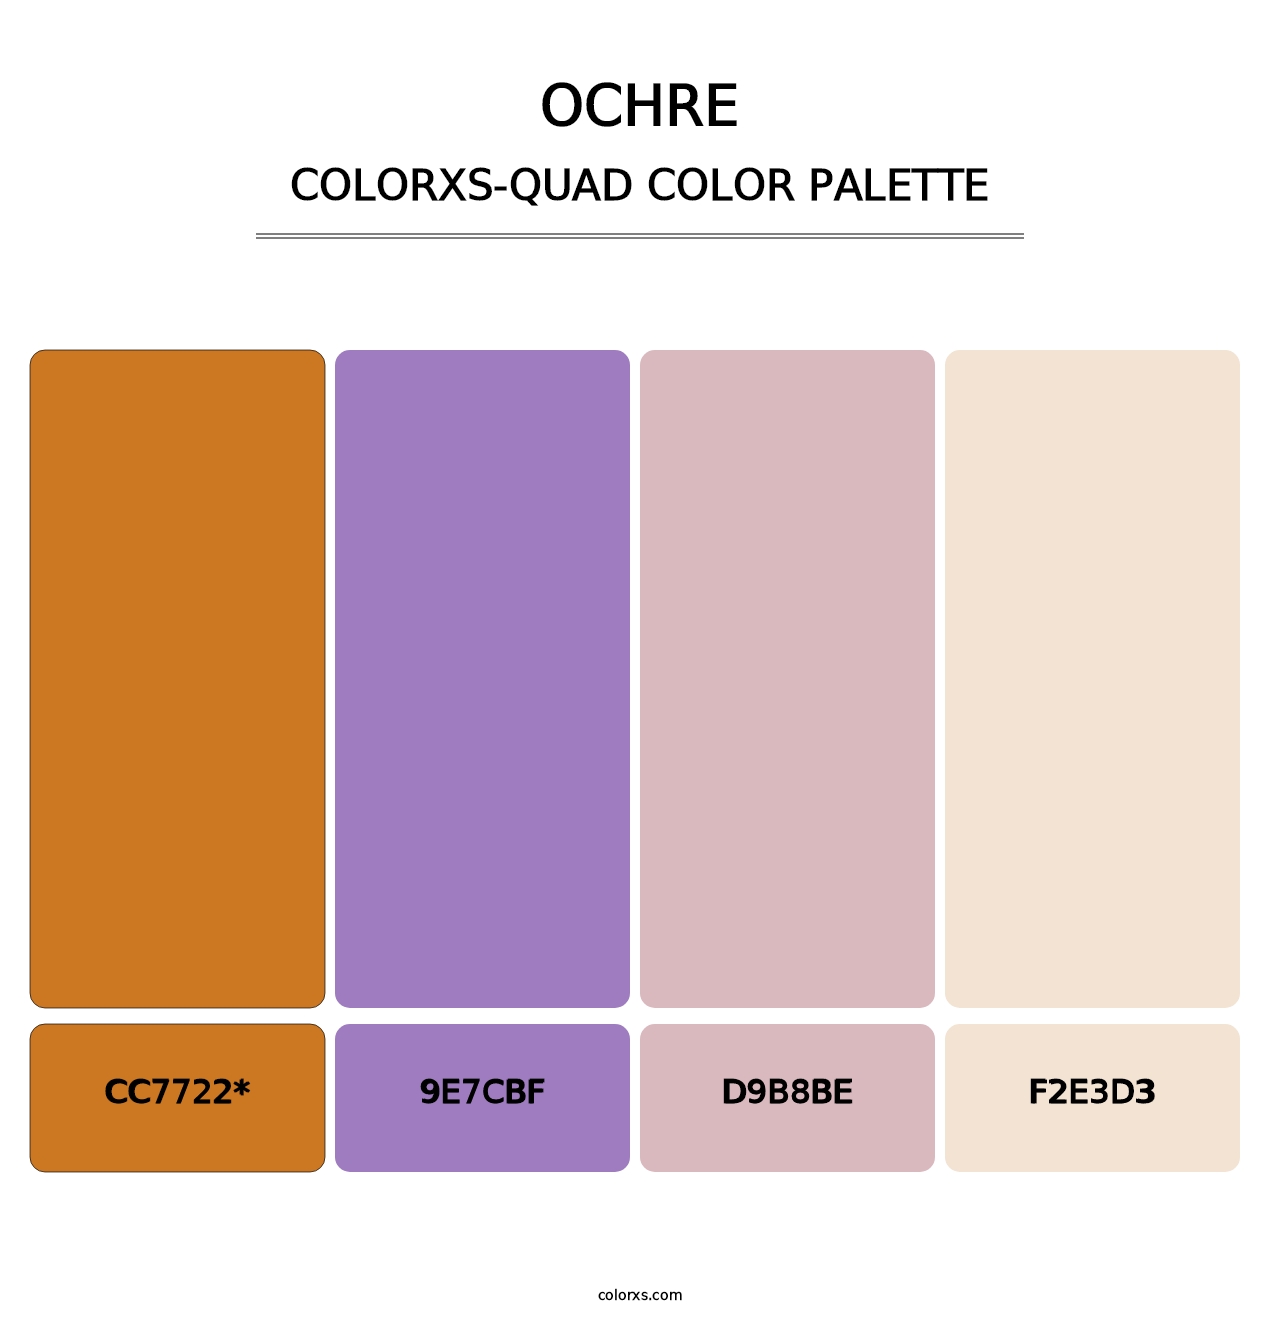 Ochre - Colorxs Quad Palette